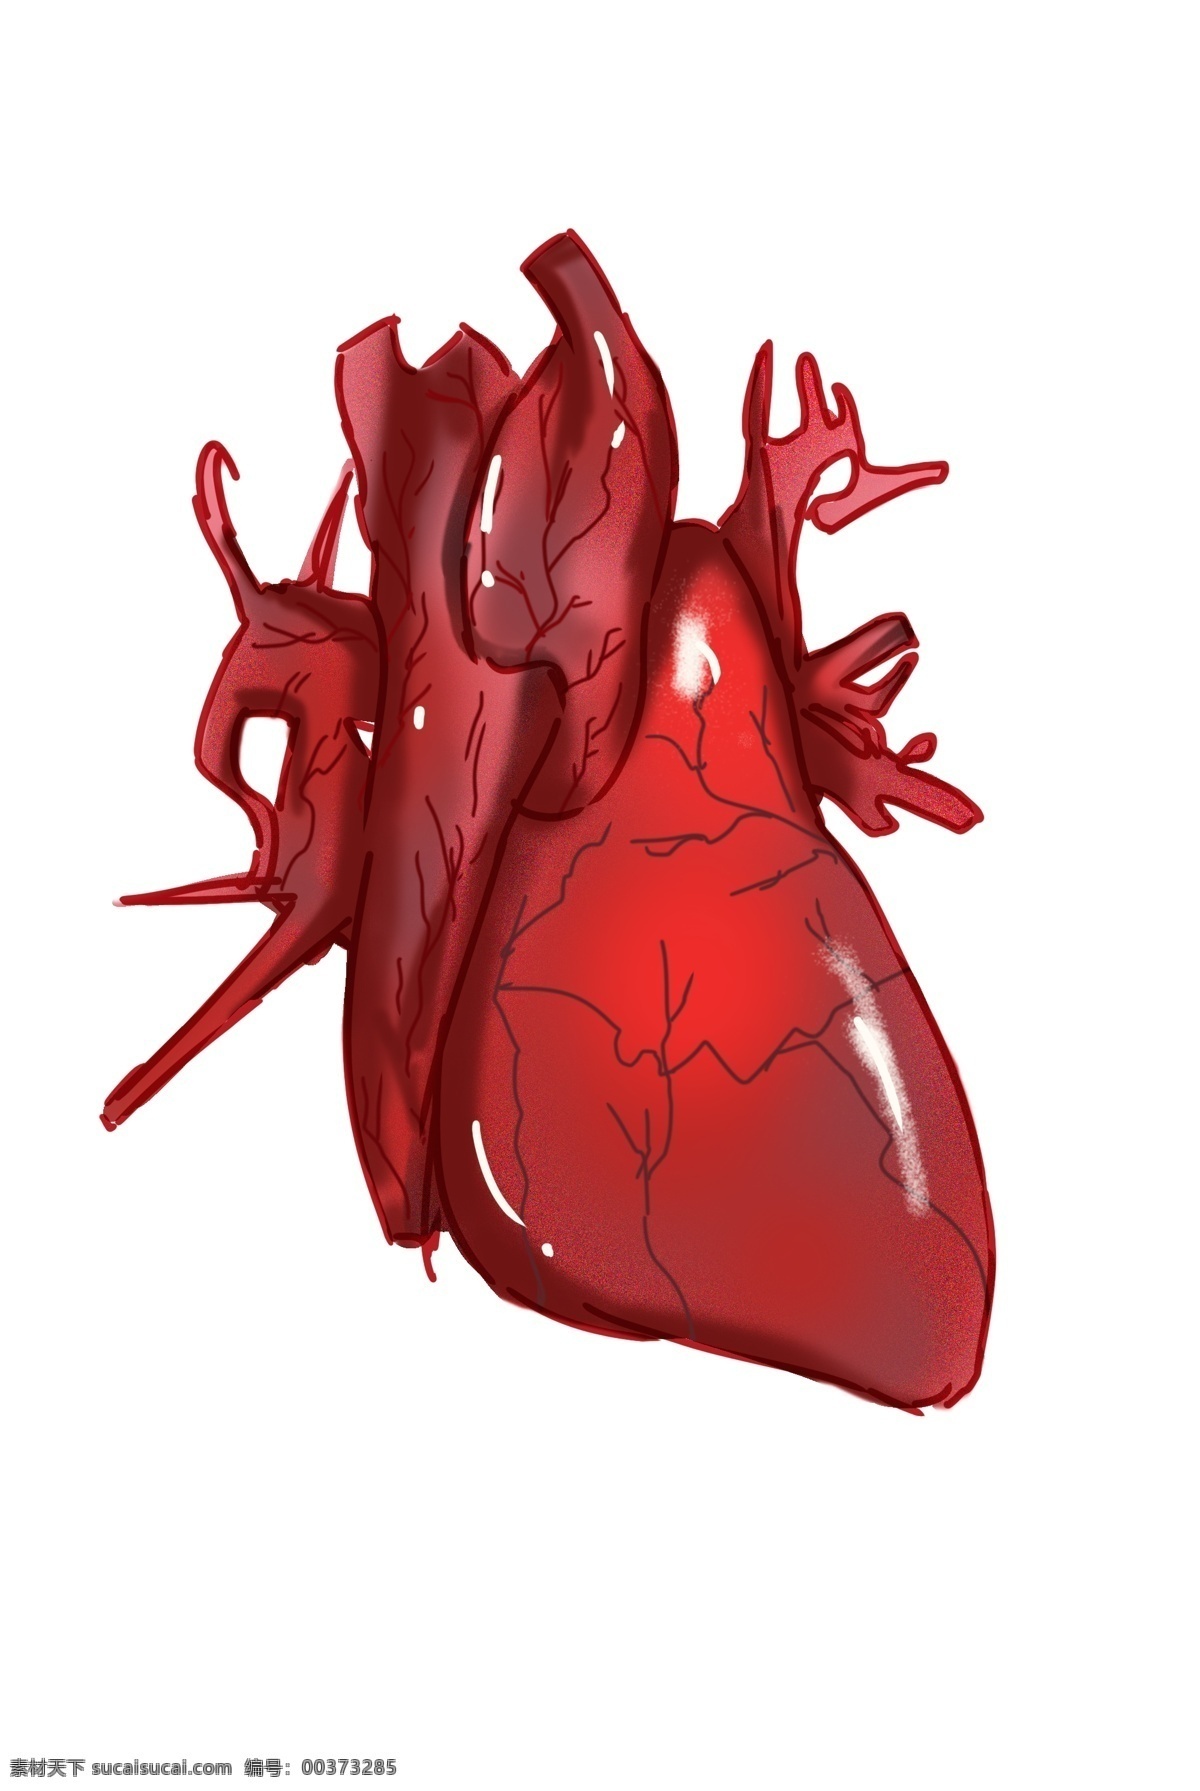 红色 心脏 装饰 插画 红色的心脏 漂亮的心脏 健康的心脏 跳动的心脏 心脏装饰 心脏插画 人体器官心脏